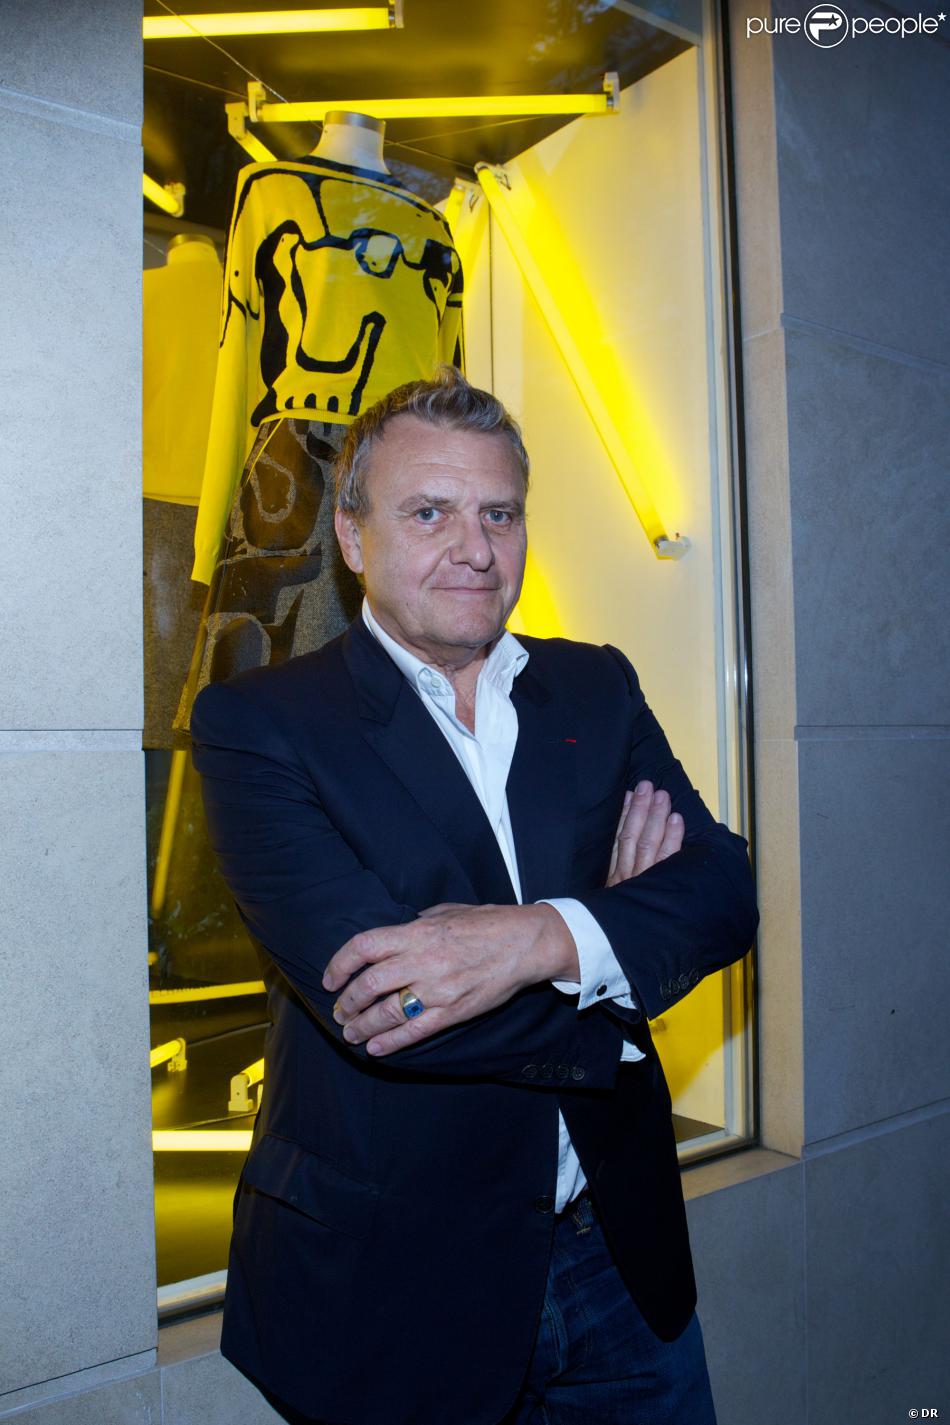 Jean-Charles de Castelbajac au lancement de la collection capsule Wild Puzzle pour la boutique N15 à Paris. Le 26 septembre 2013